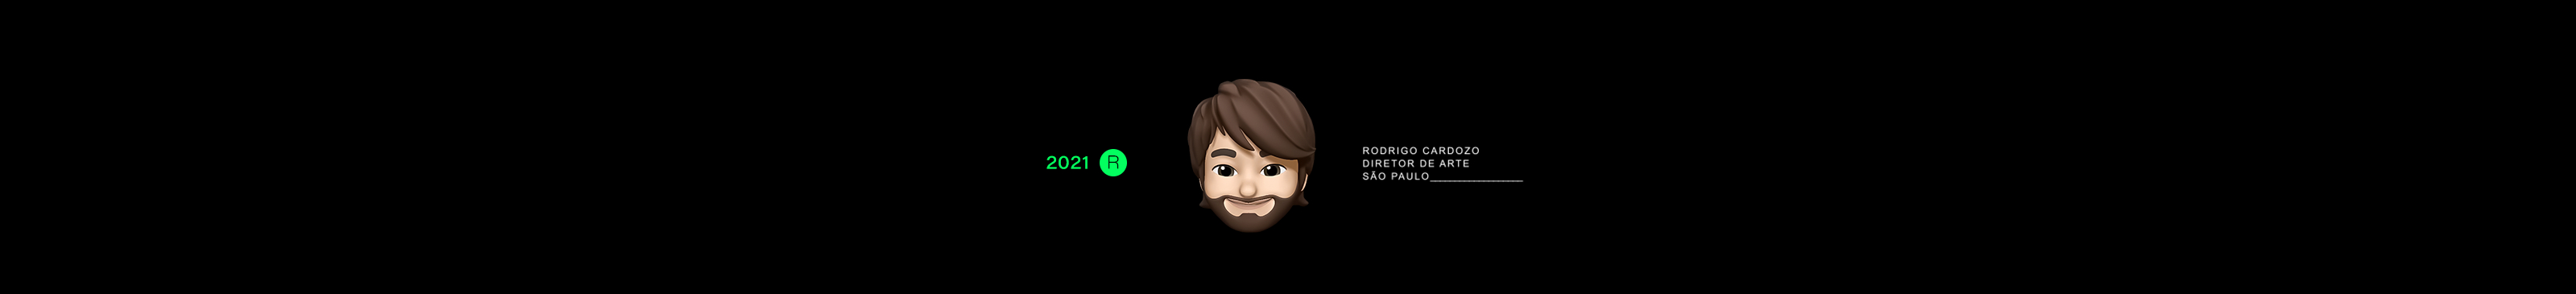 Profielbanner van Rodrigo Cardozo